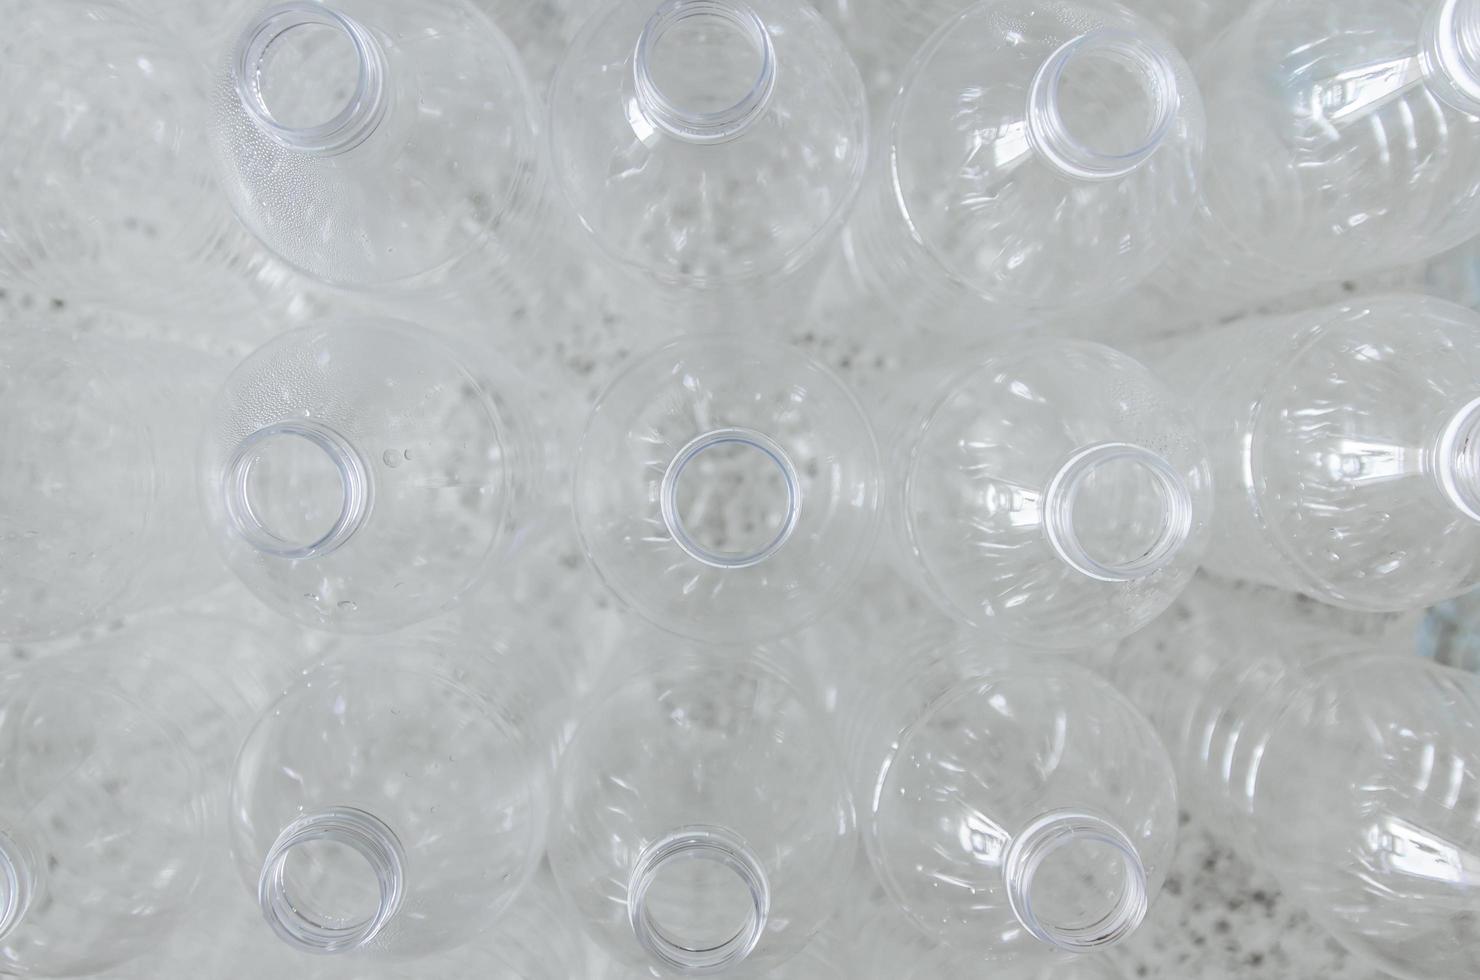 botellas vacías para reciclar, campaña para reducir el plástico y salvar el mundo. foto